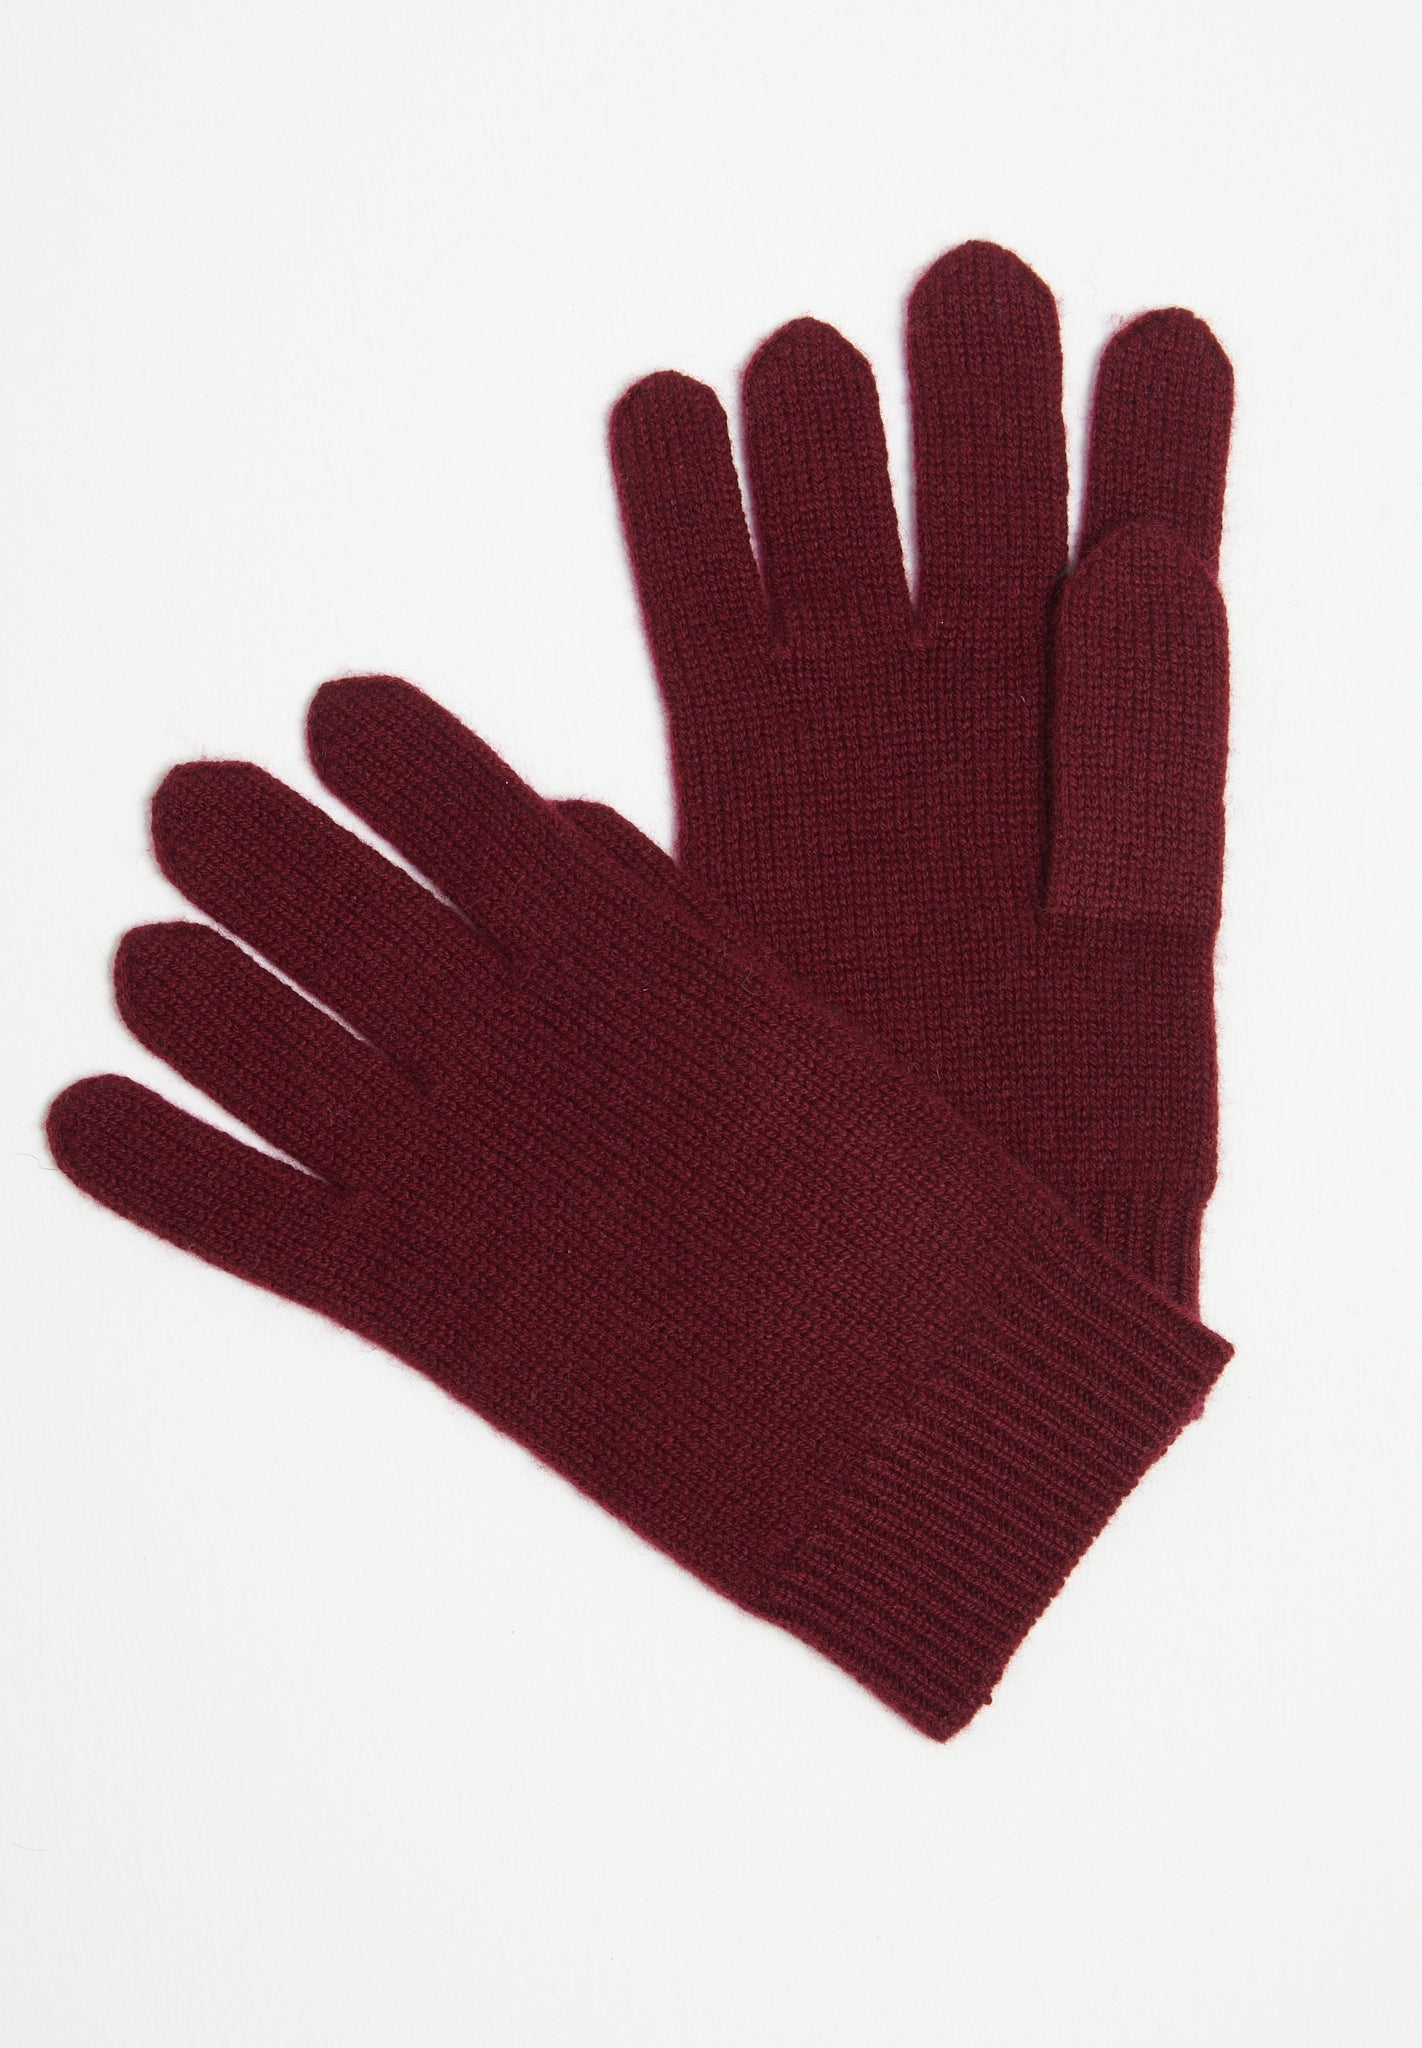 Burgundy red 4-thread cashmere gloves